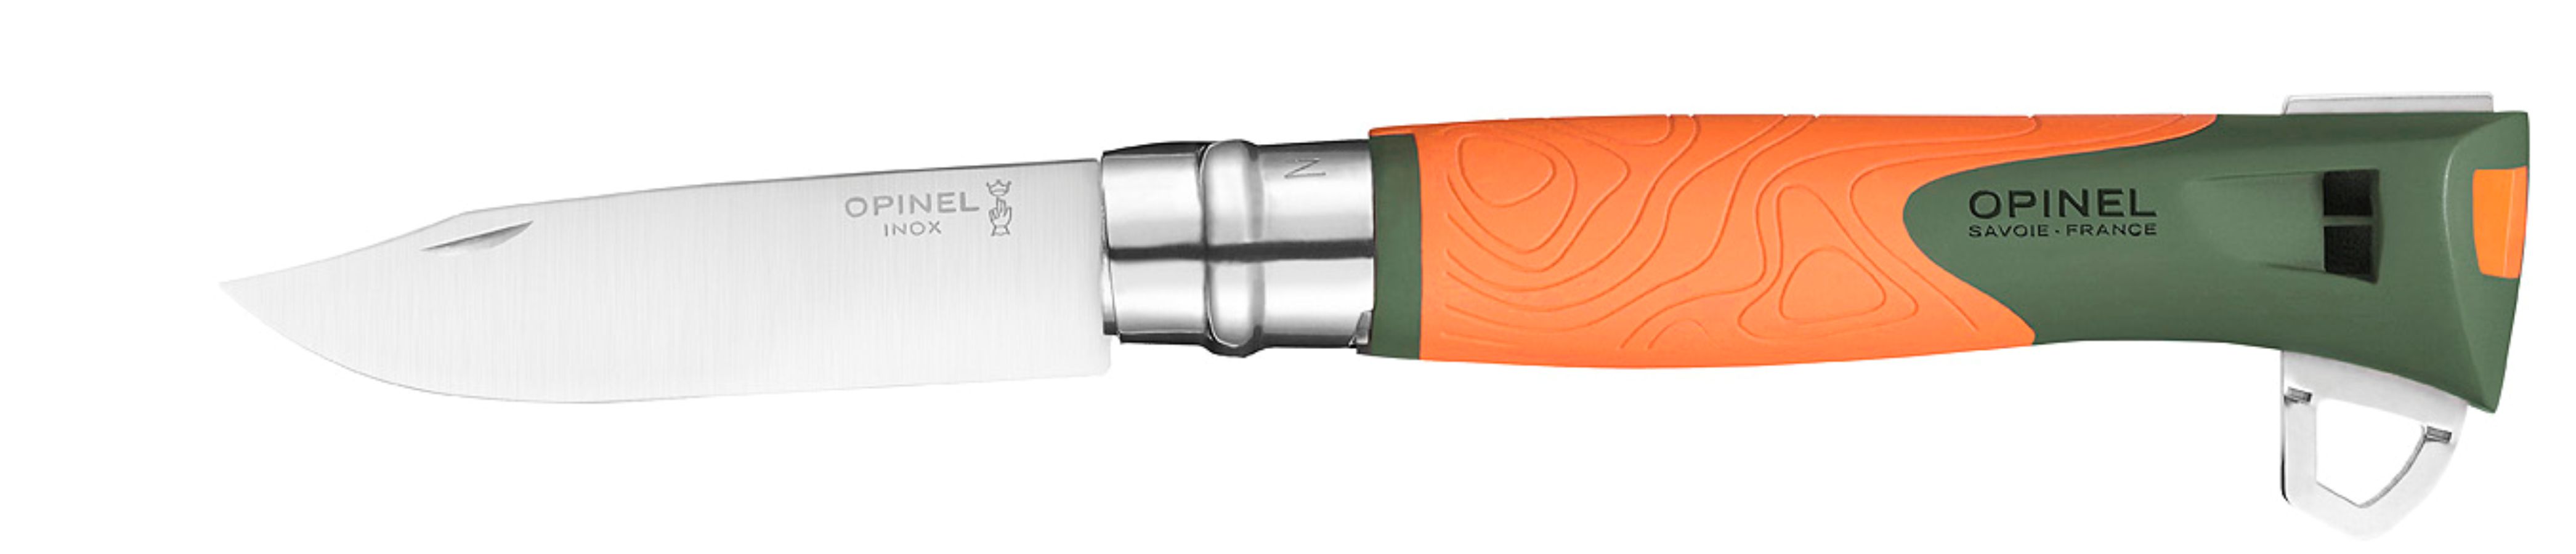 Opinel Explore knife virobloc no.12 orange handle